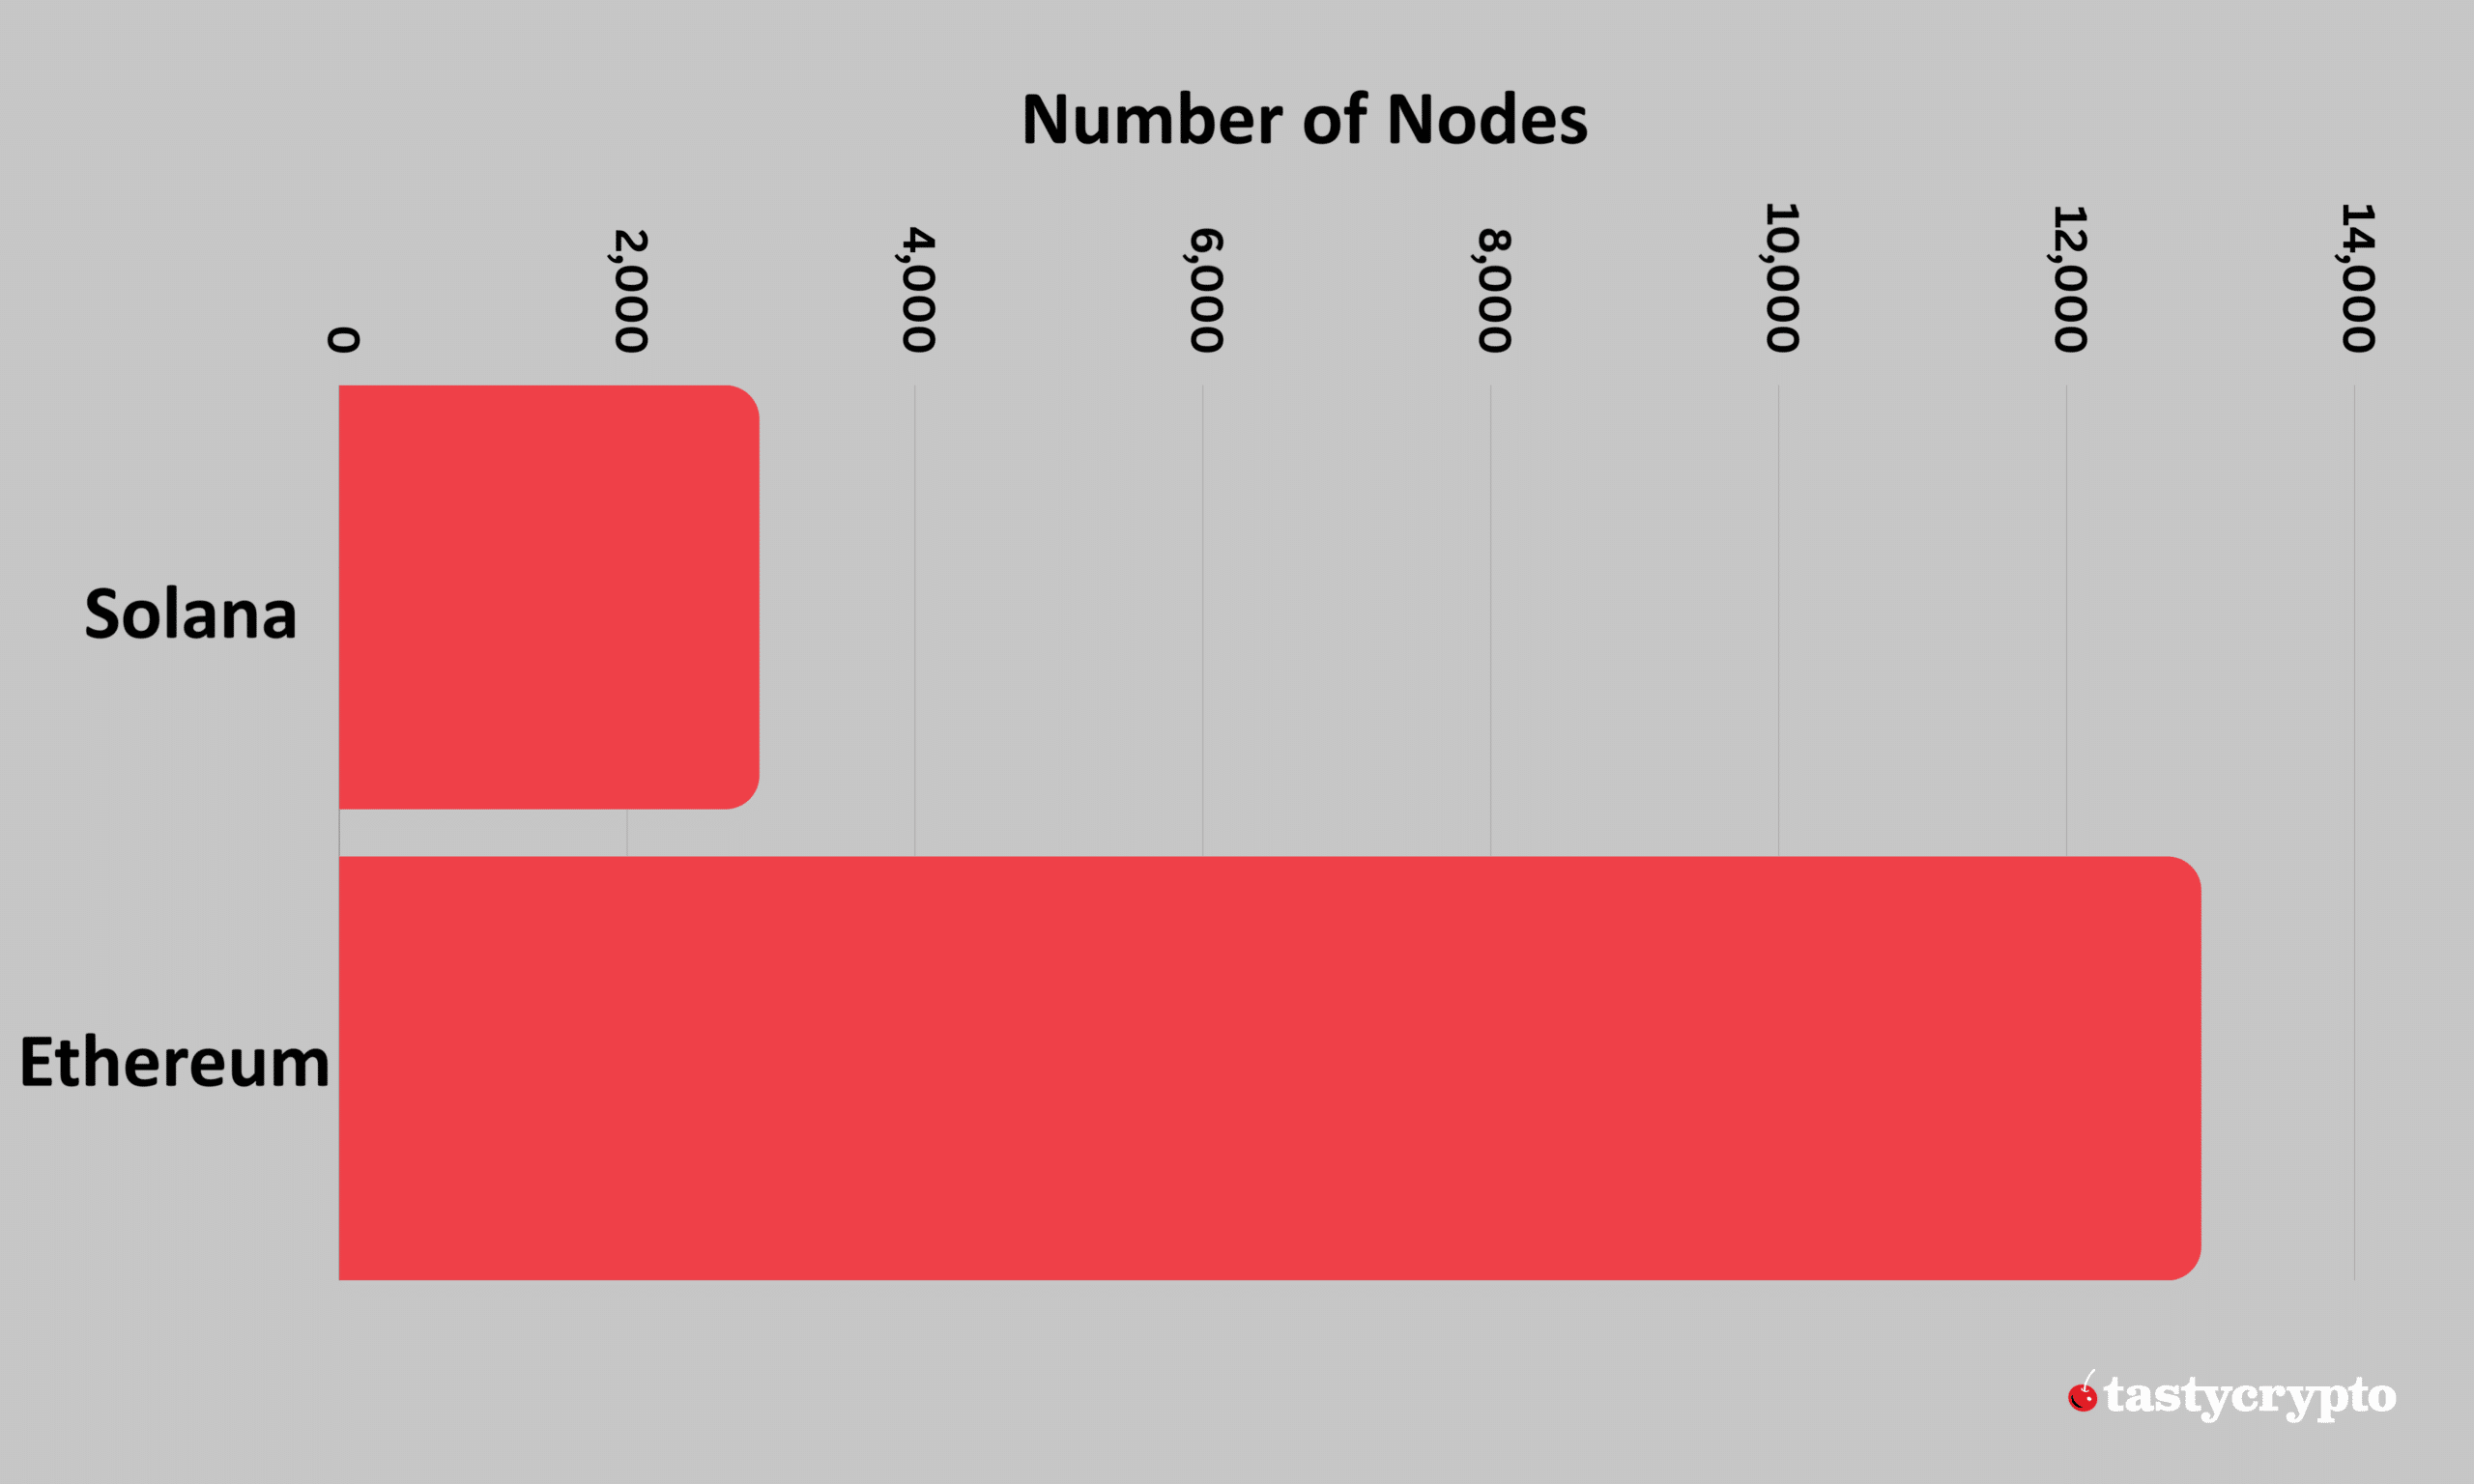 sol vs eth: number of nodes